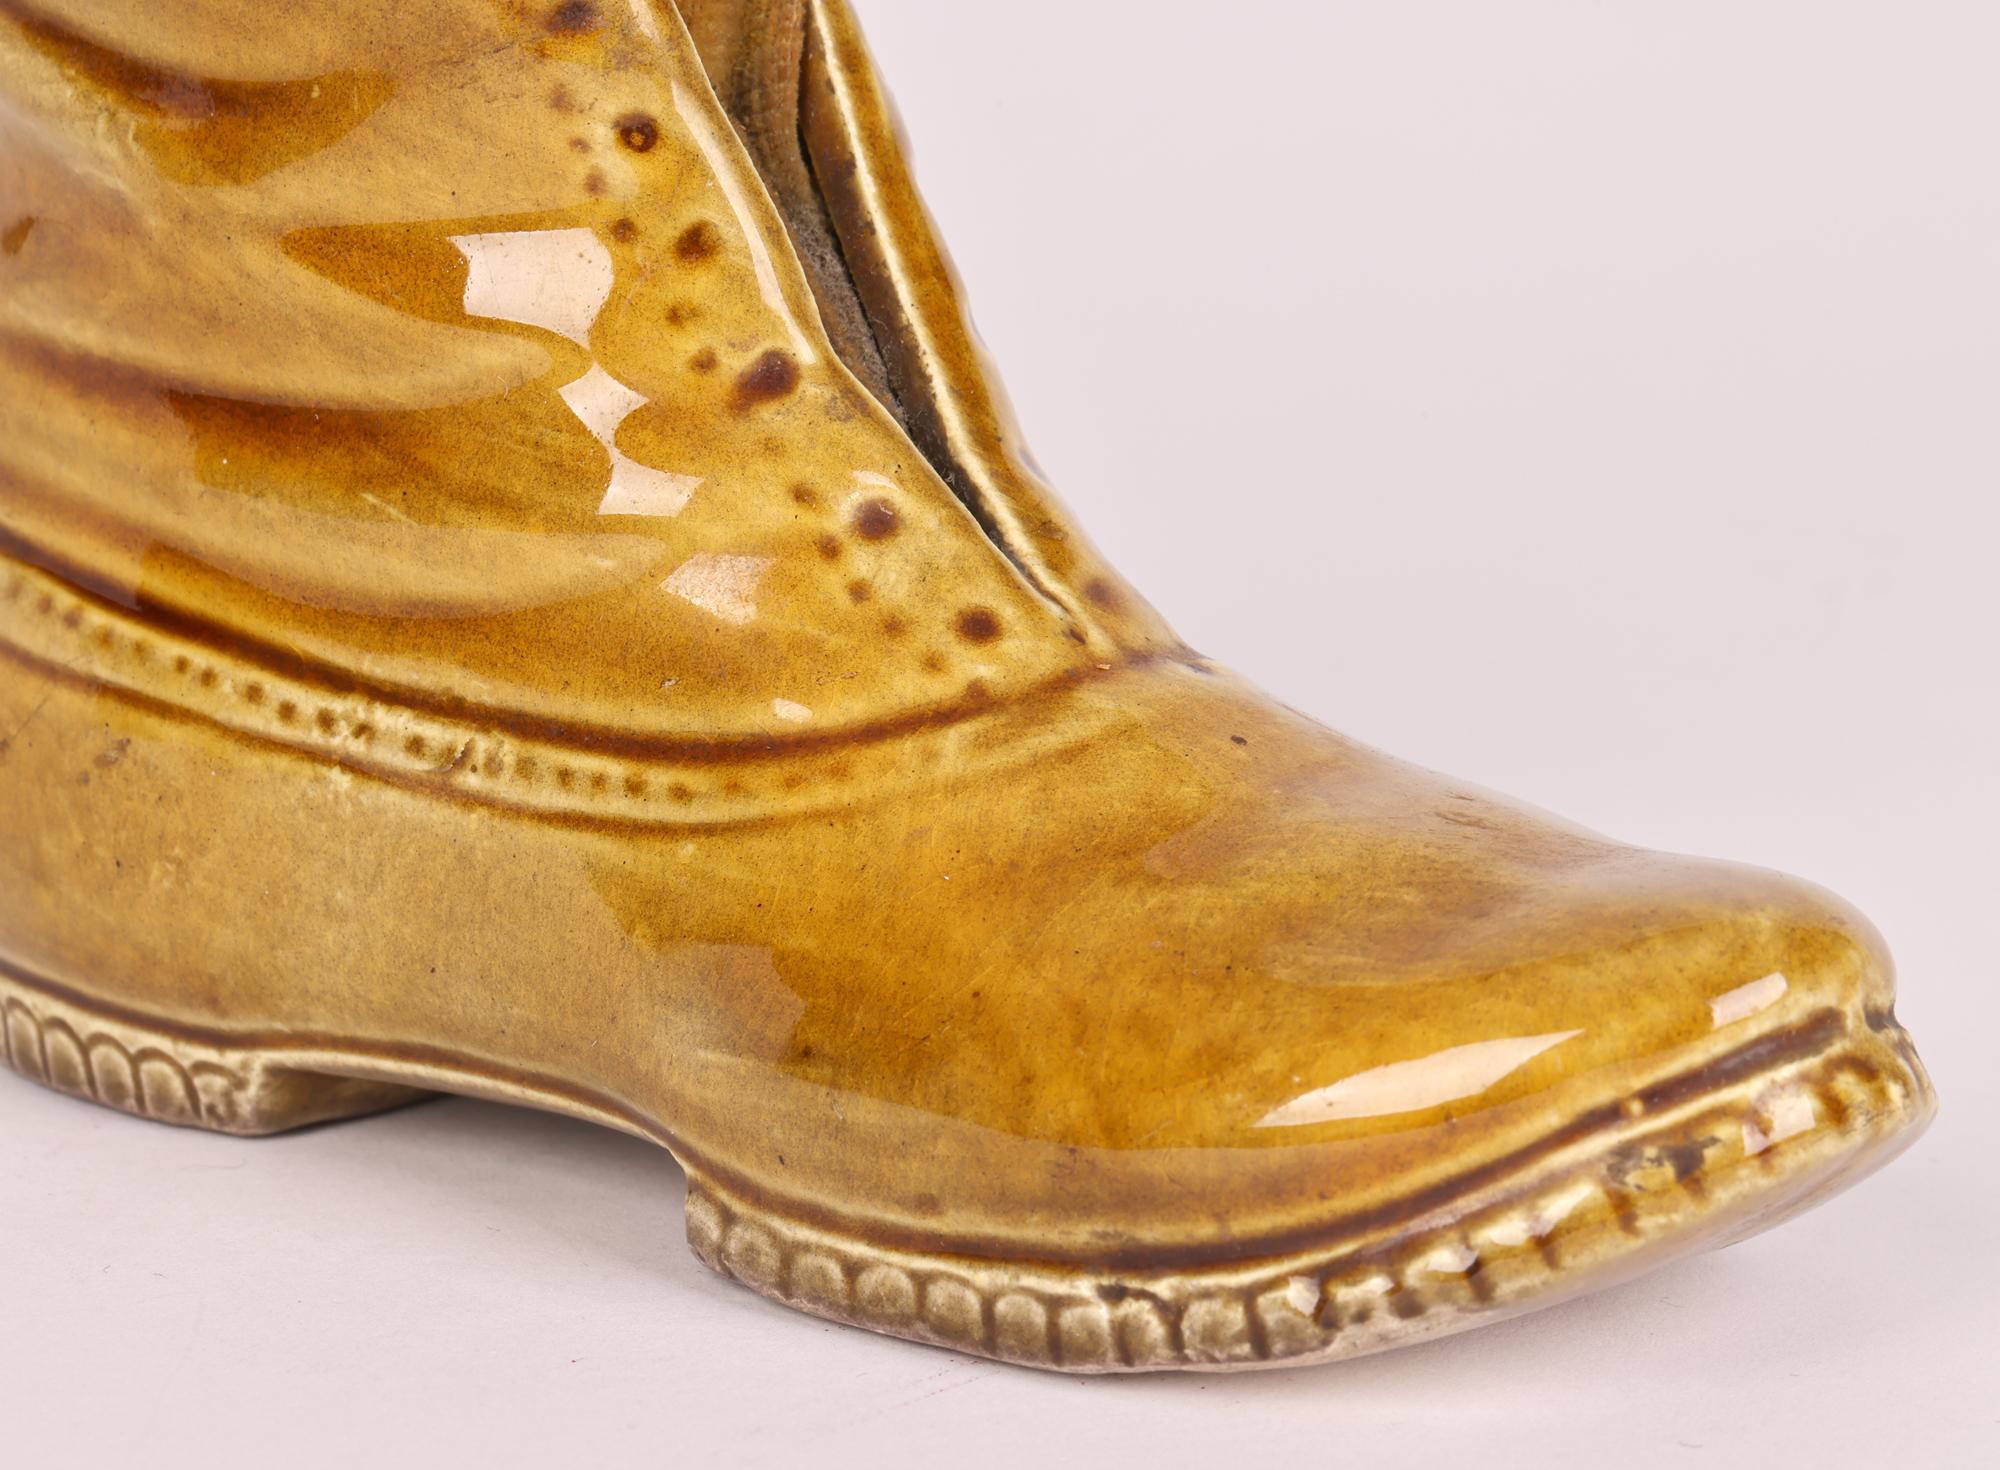 Ein ungewöhnliches und großes viktorianisches, wahrscheinlich Staffordshire, honigglasiertes Keramik-Stiefelkissen aus dem 19. Jahrhundert. Der große Stiefel ist gut getopft Erfassung der Falten und den Charakter des Leders mit einer offenen Front